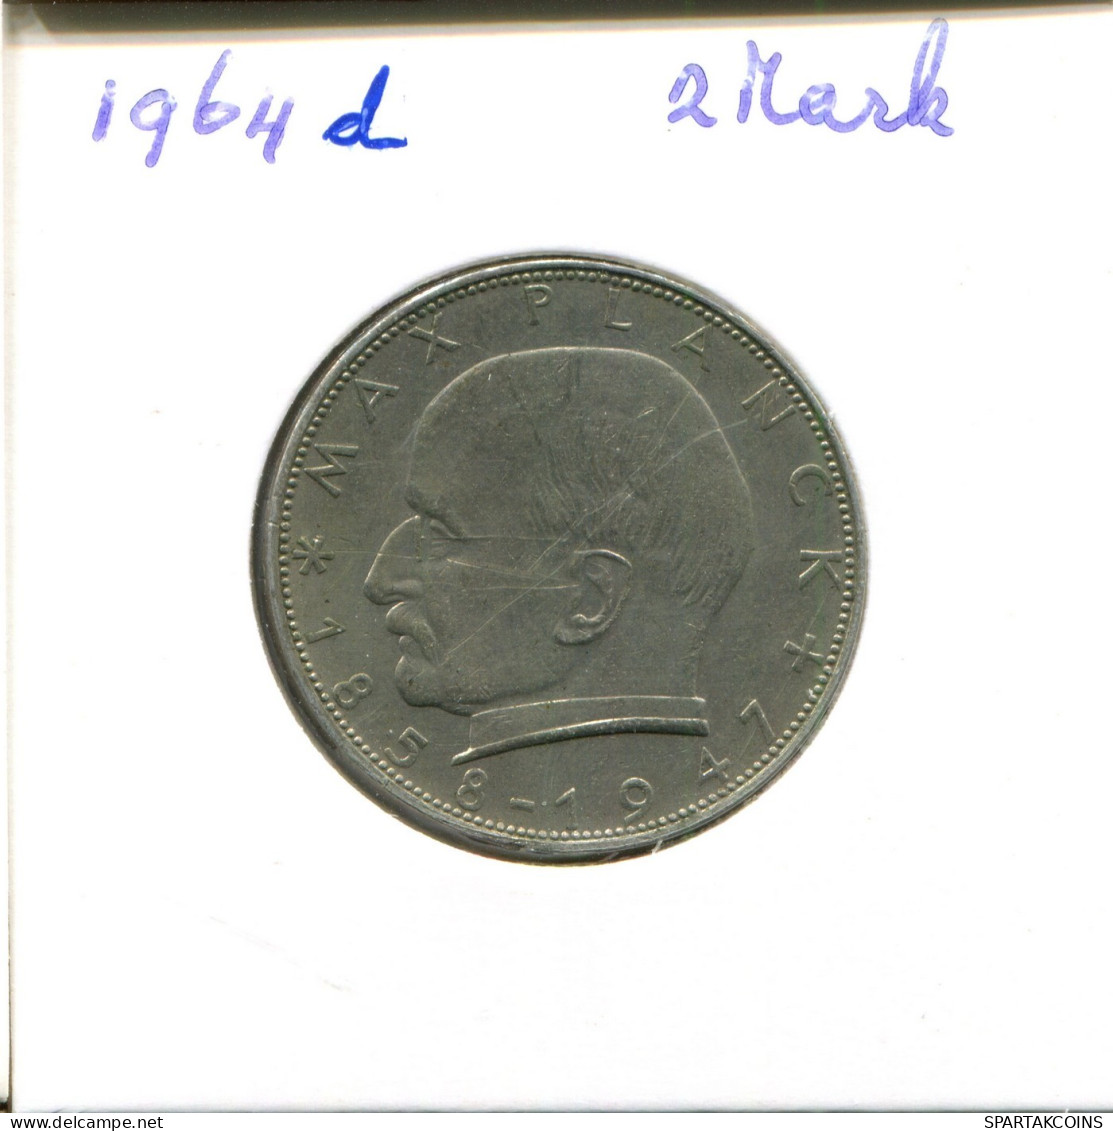 2 DM 1964 D M.Planck BRD ALEMANIA GERMANY PLATA Moneda #DA814.E.A - 2 Mark